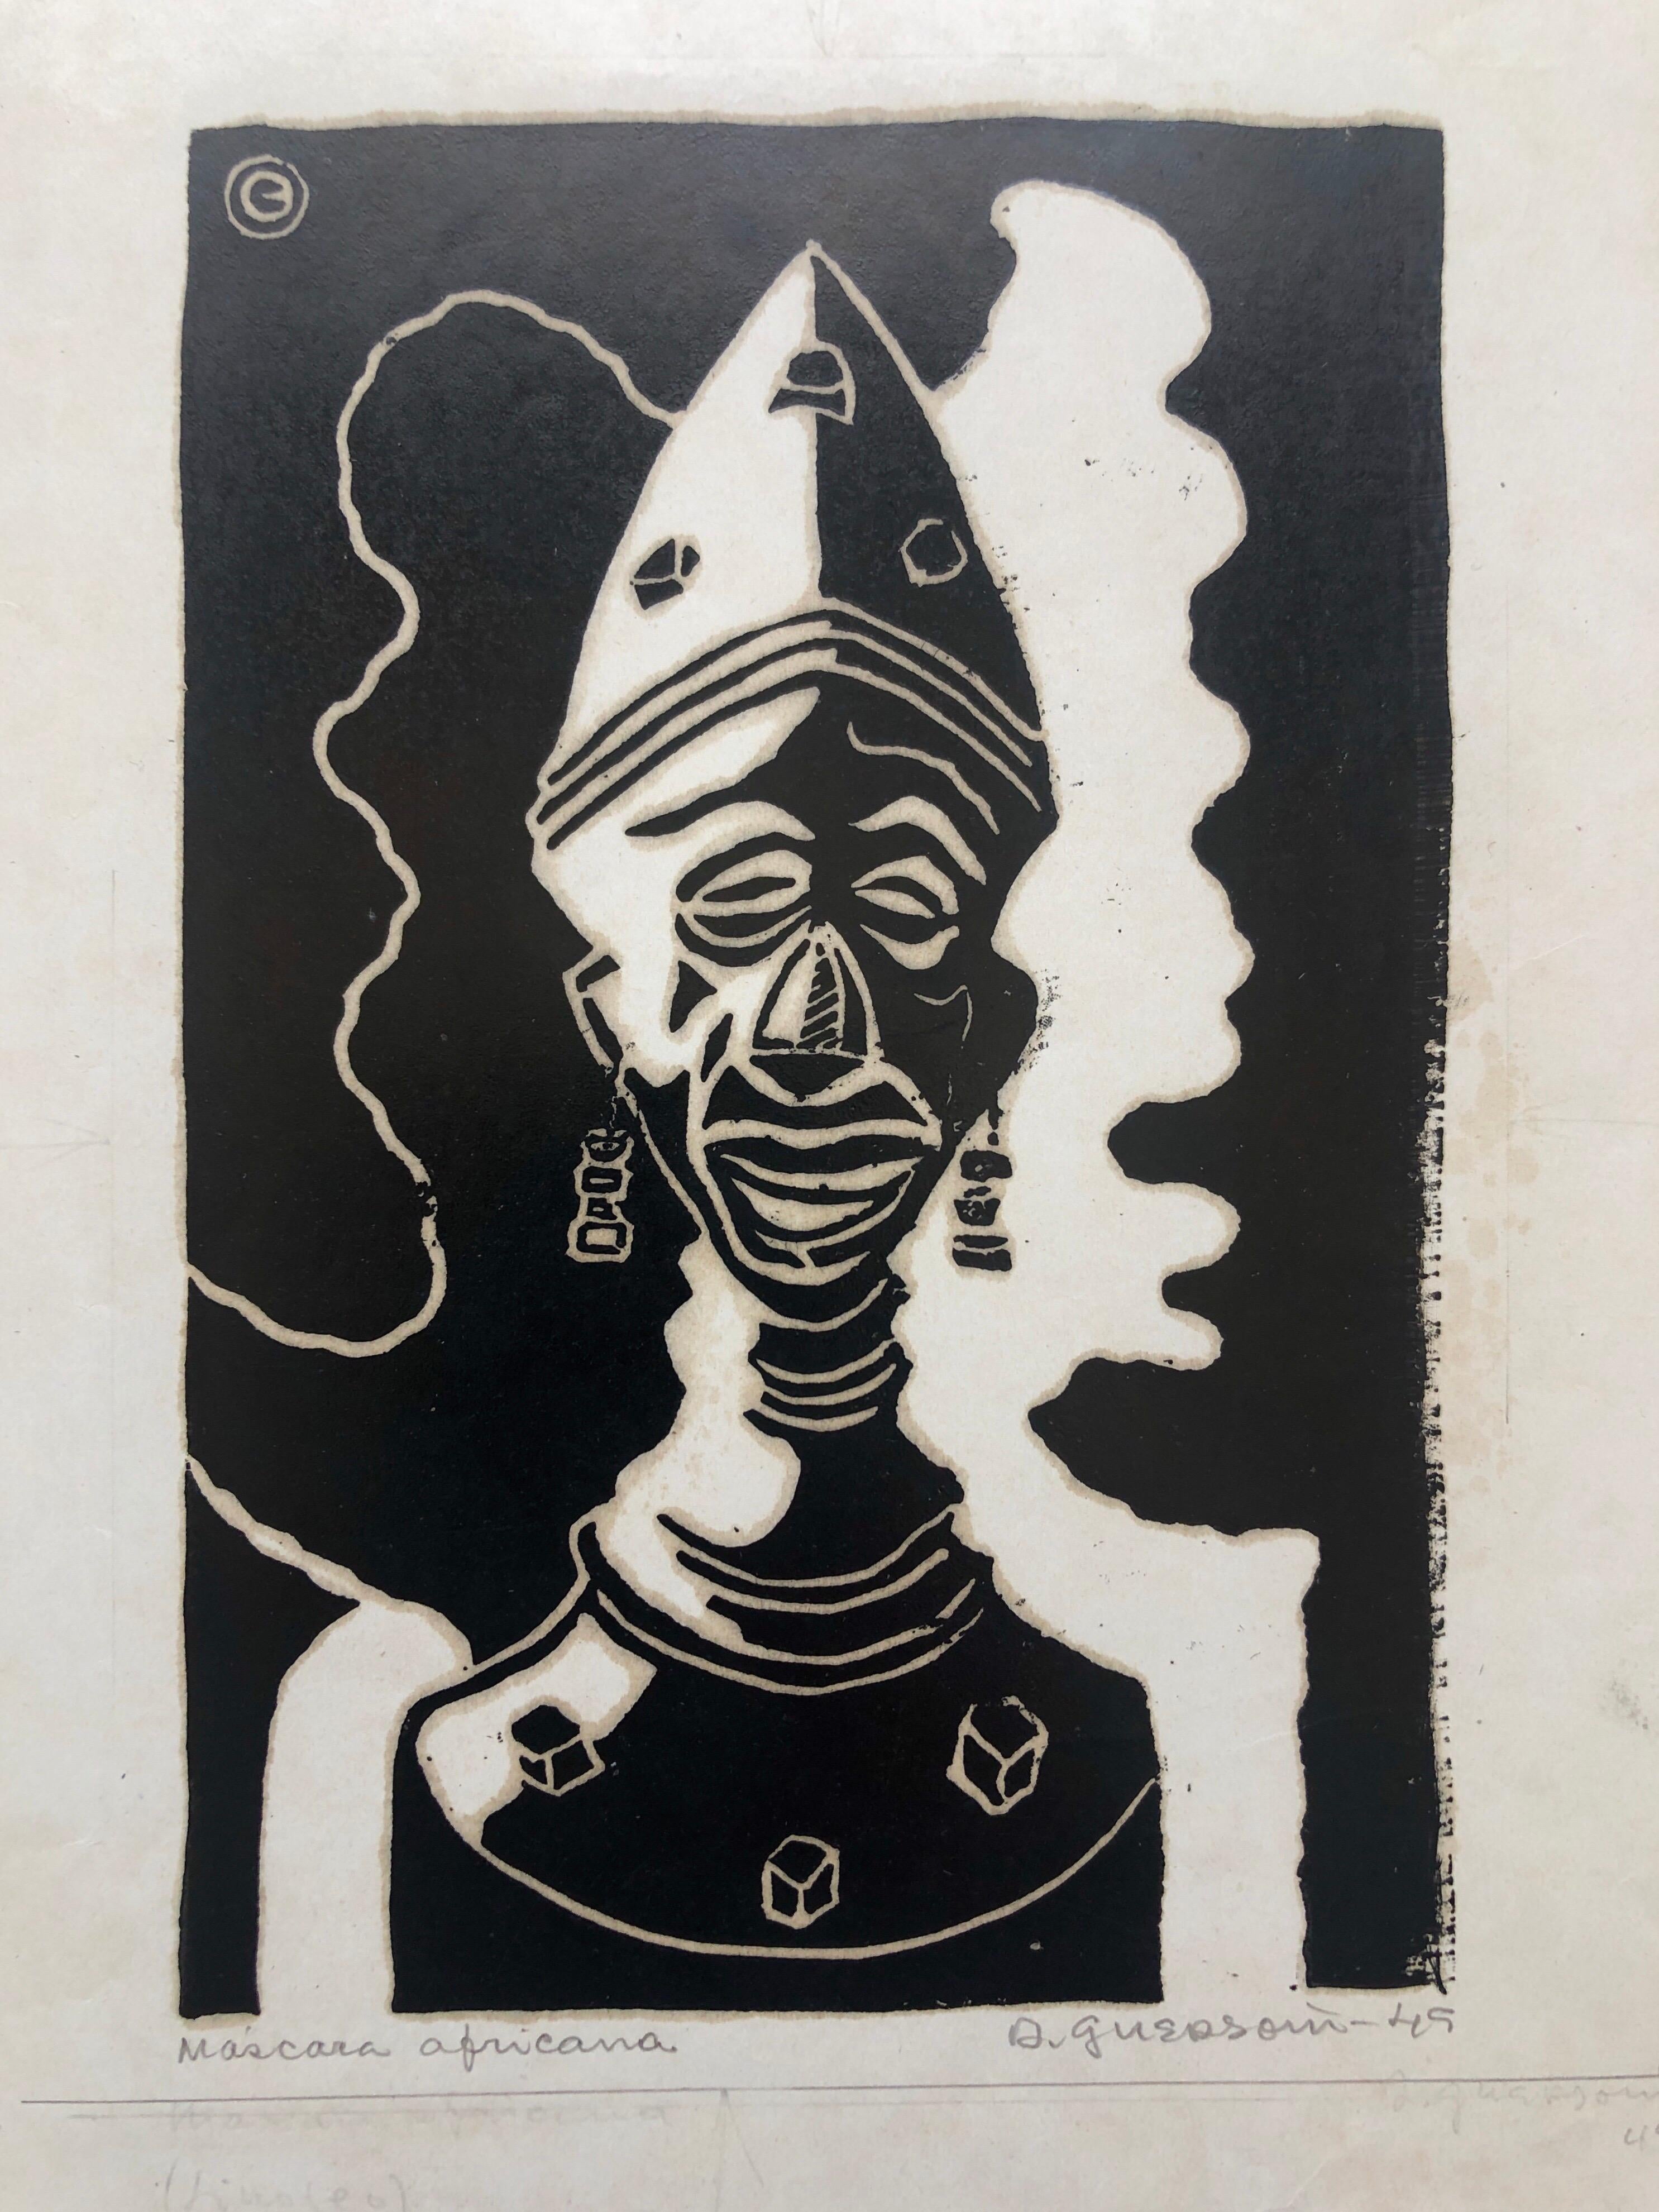 Odetto Guersoni Nude Print - 1945 Brazilian Master, Art Deco Clown Serigraph Woodcut 